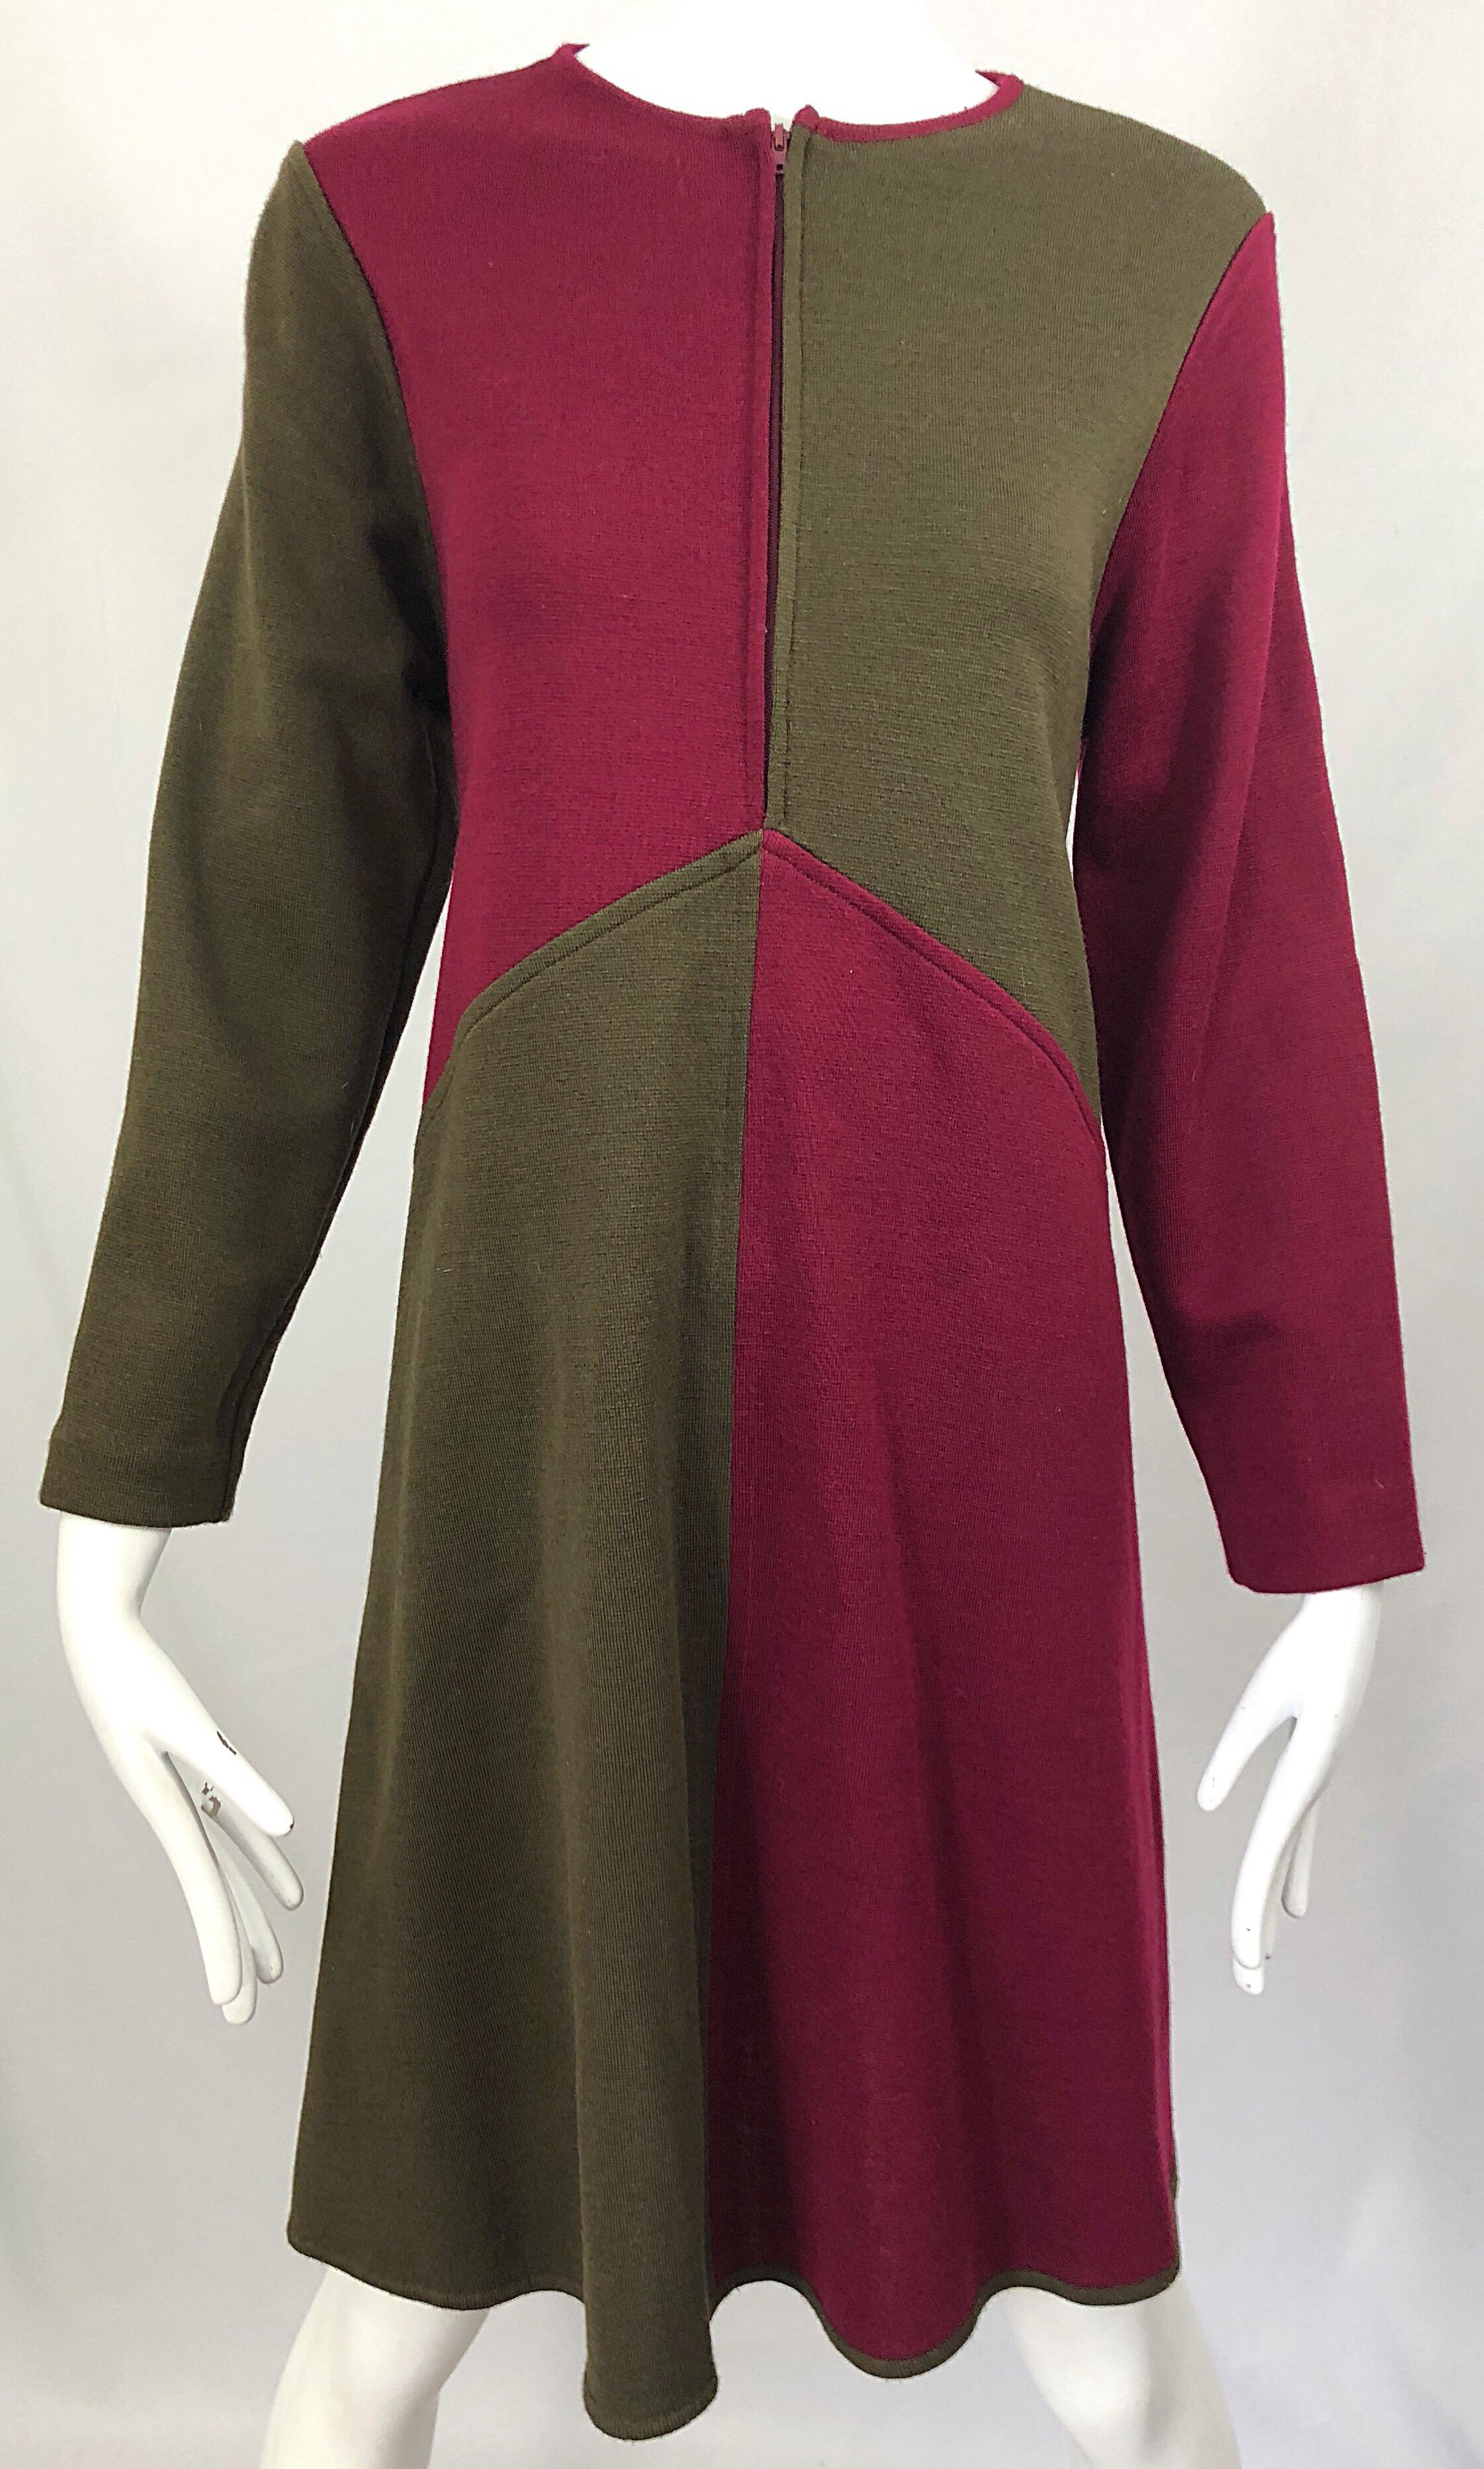 Vintage HARVE BENARD 1960s Style Maroon Burgundy + Brown Knit Wool Swing Dress 8